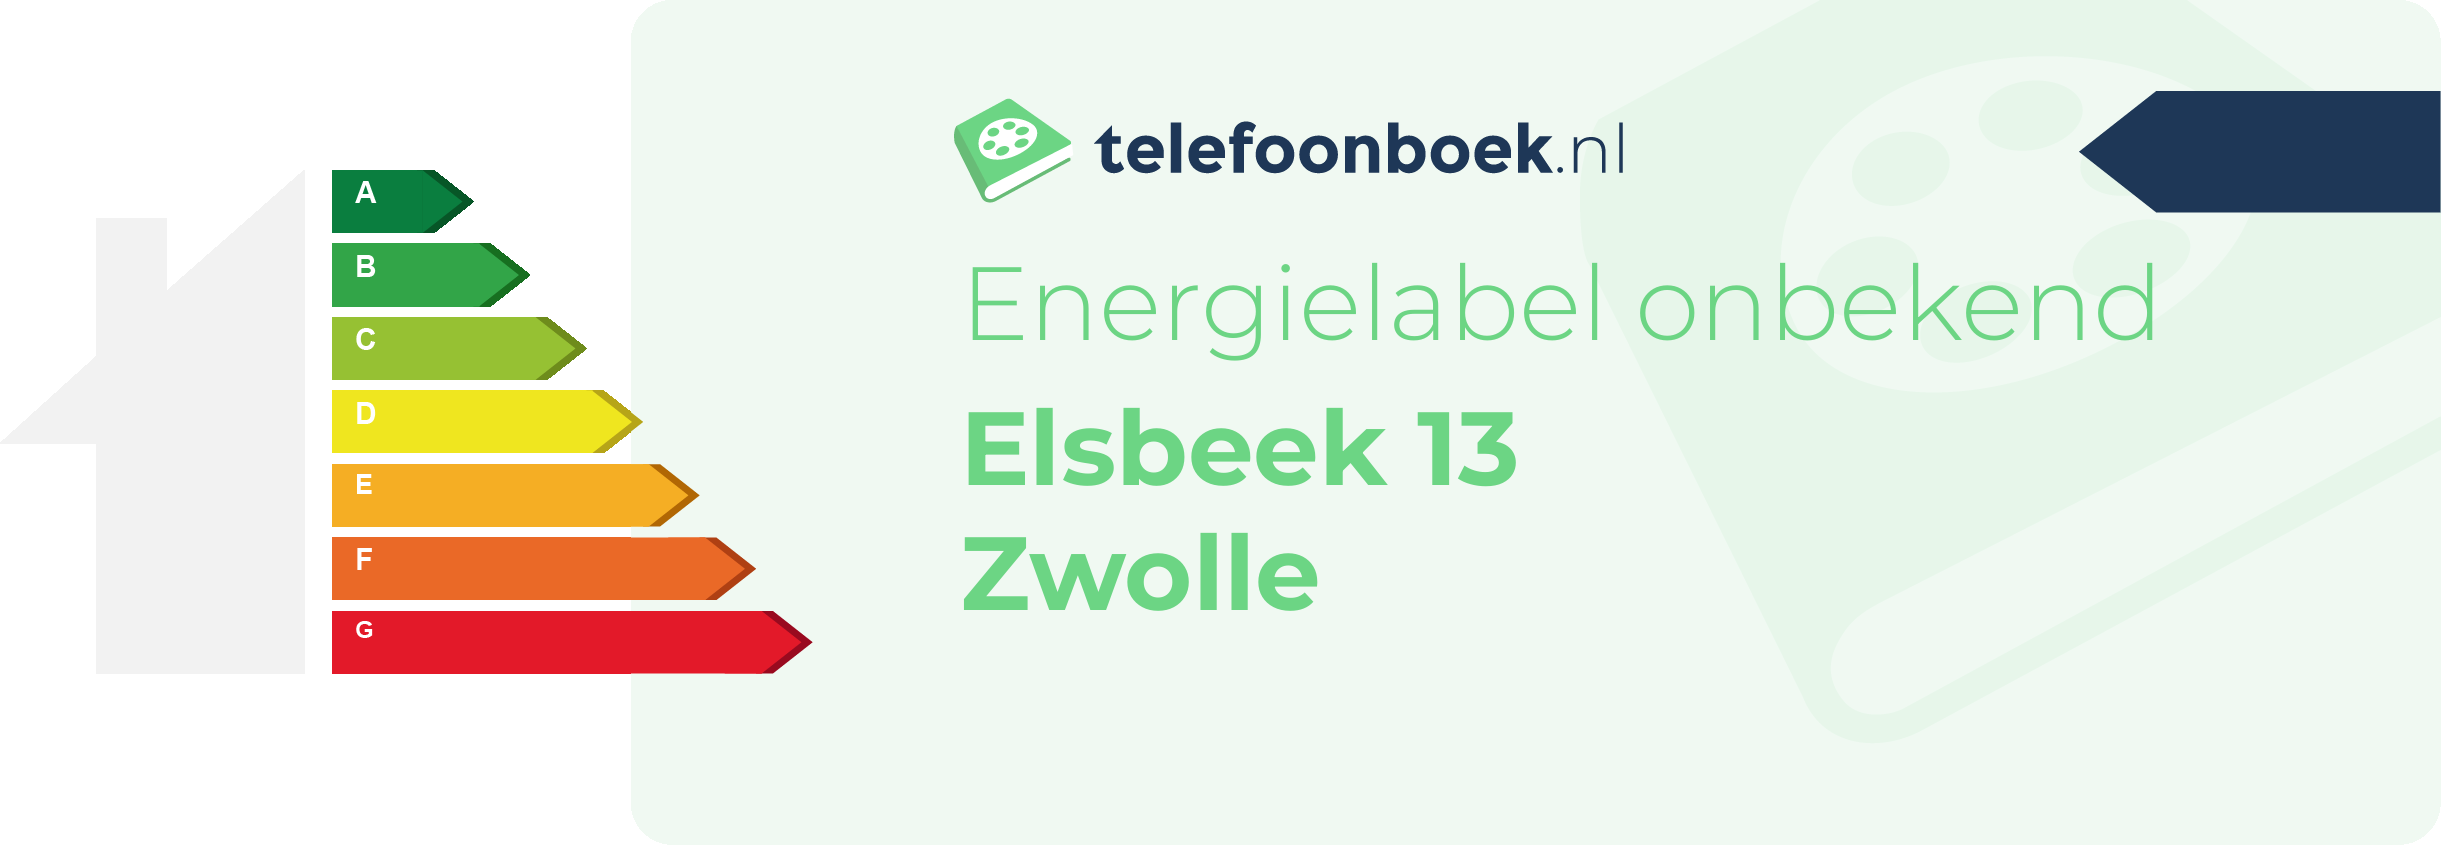 Energielabel Elsbeek 13 Zwolle